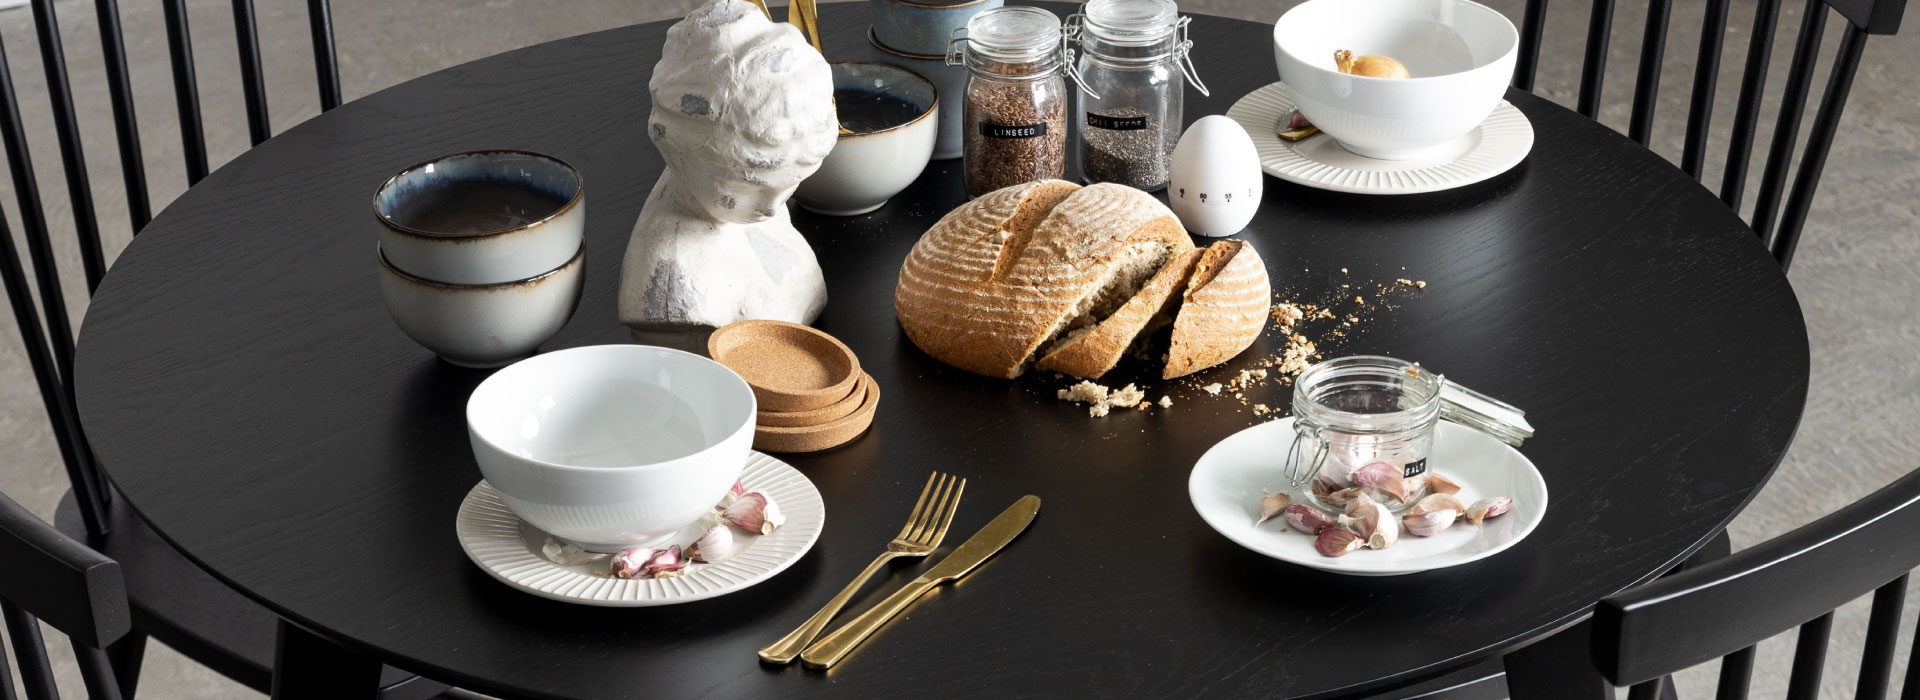 Zbliżenie na czarny stół do jadalni, na którym widać zastawę w kolorze błękitnym i białym, rozkrojony chleb, a także słoiki z musli i ziarnami.